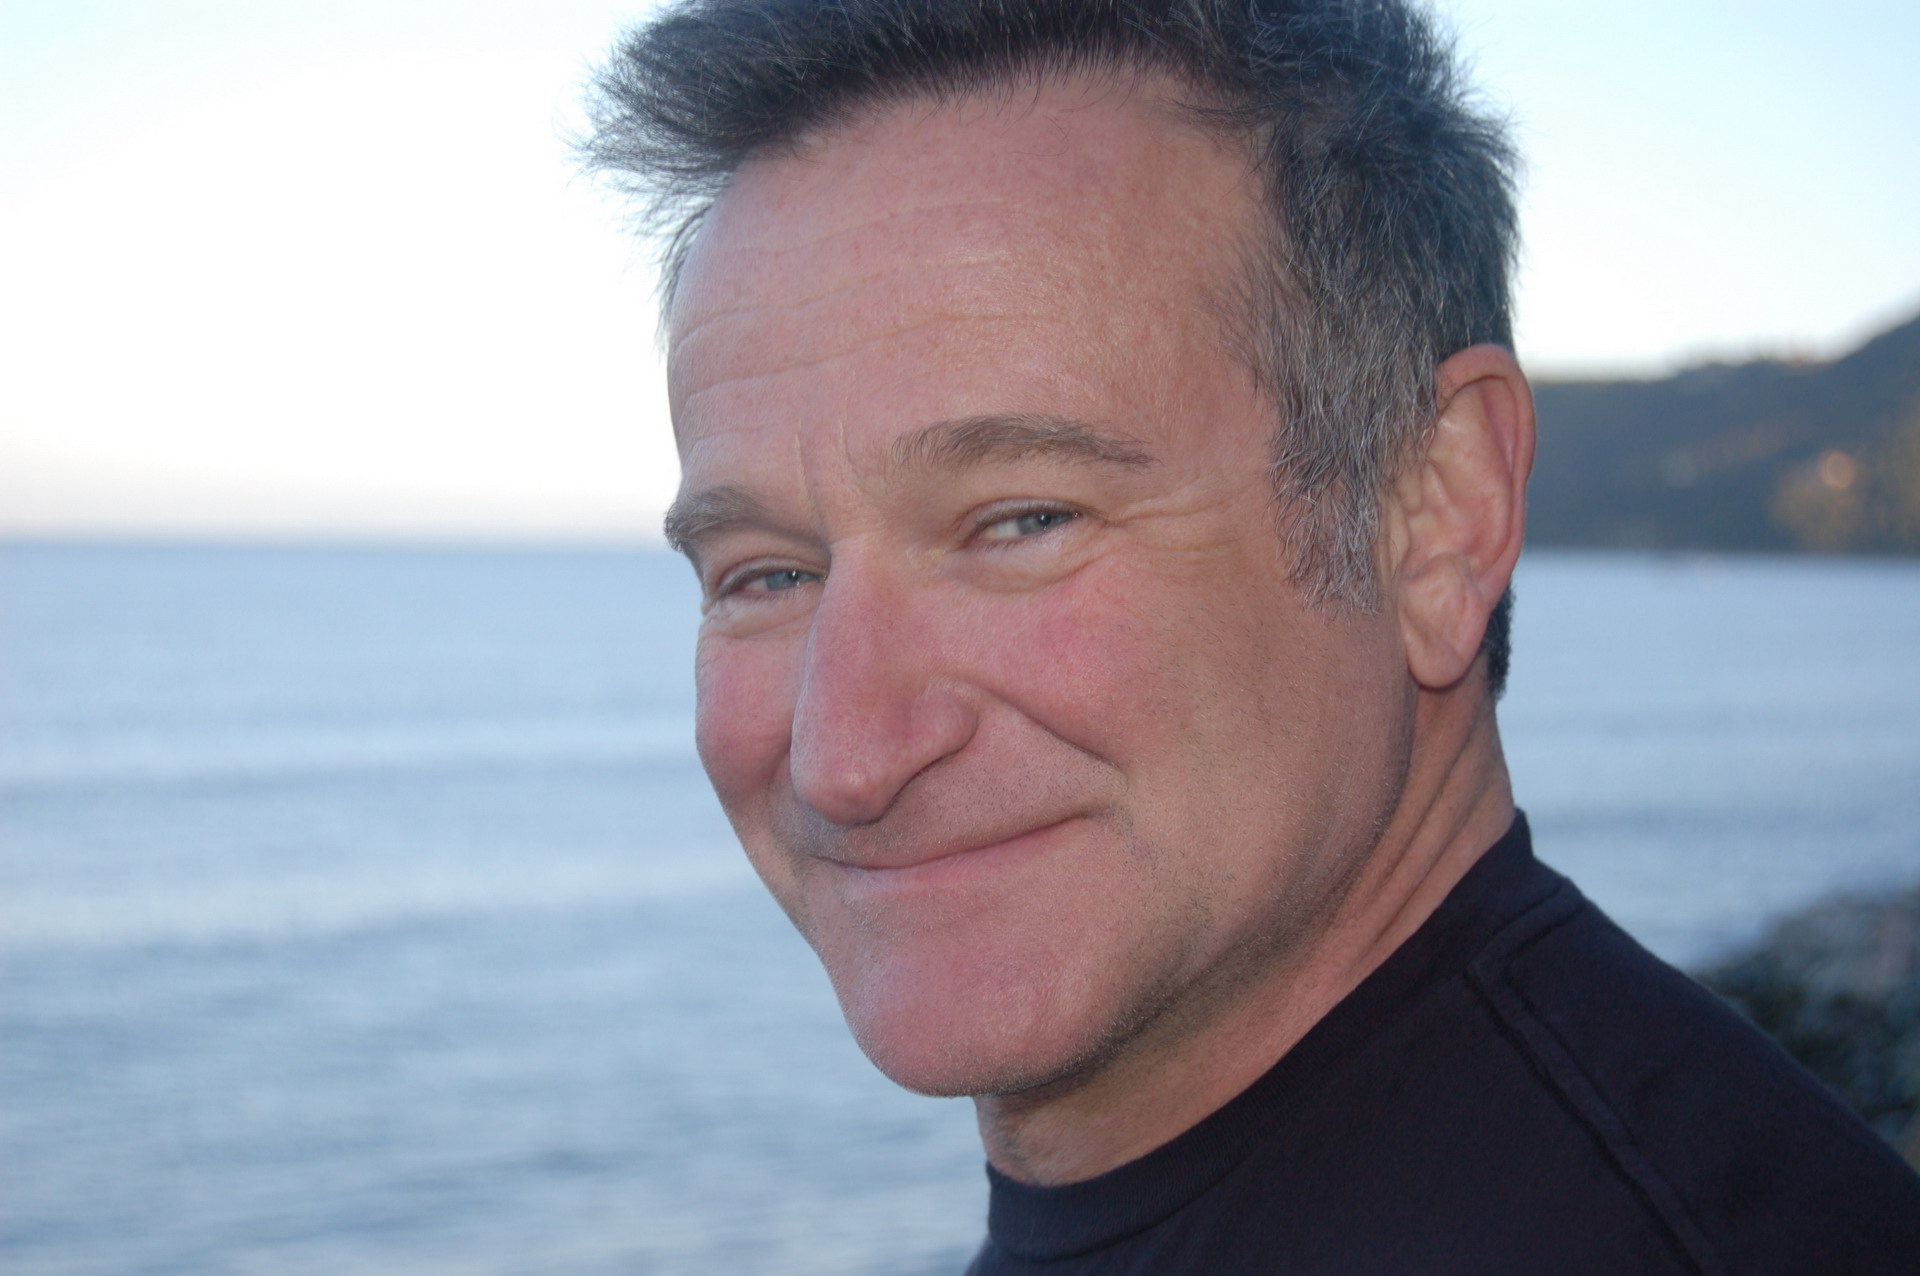 Melhores papéis de parede de Robin Williams para tela do telefone